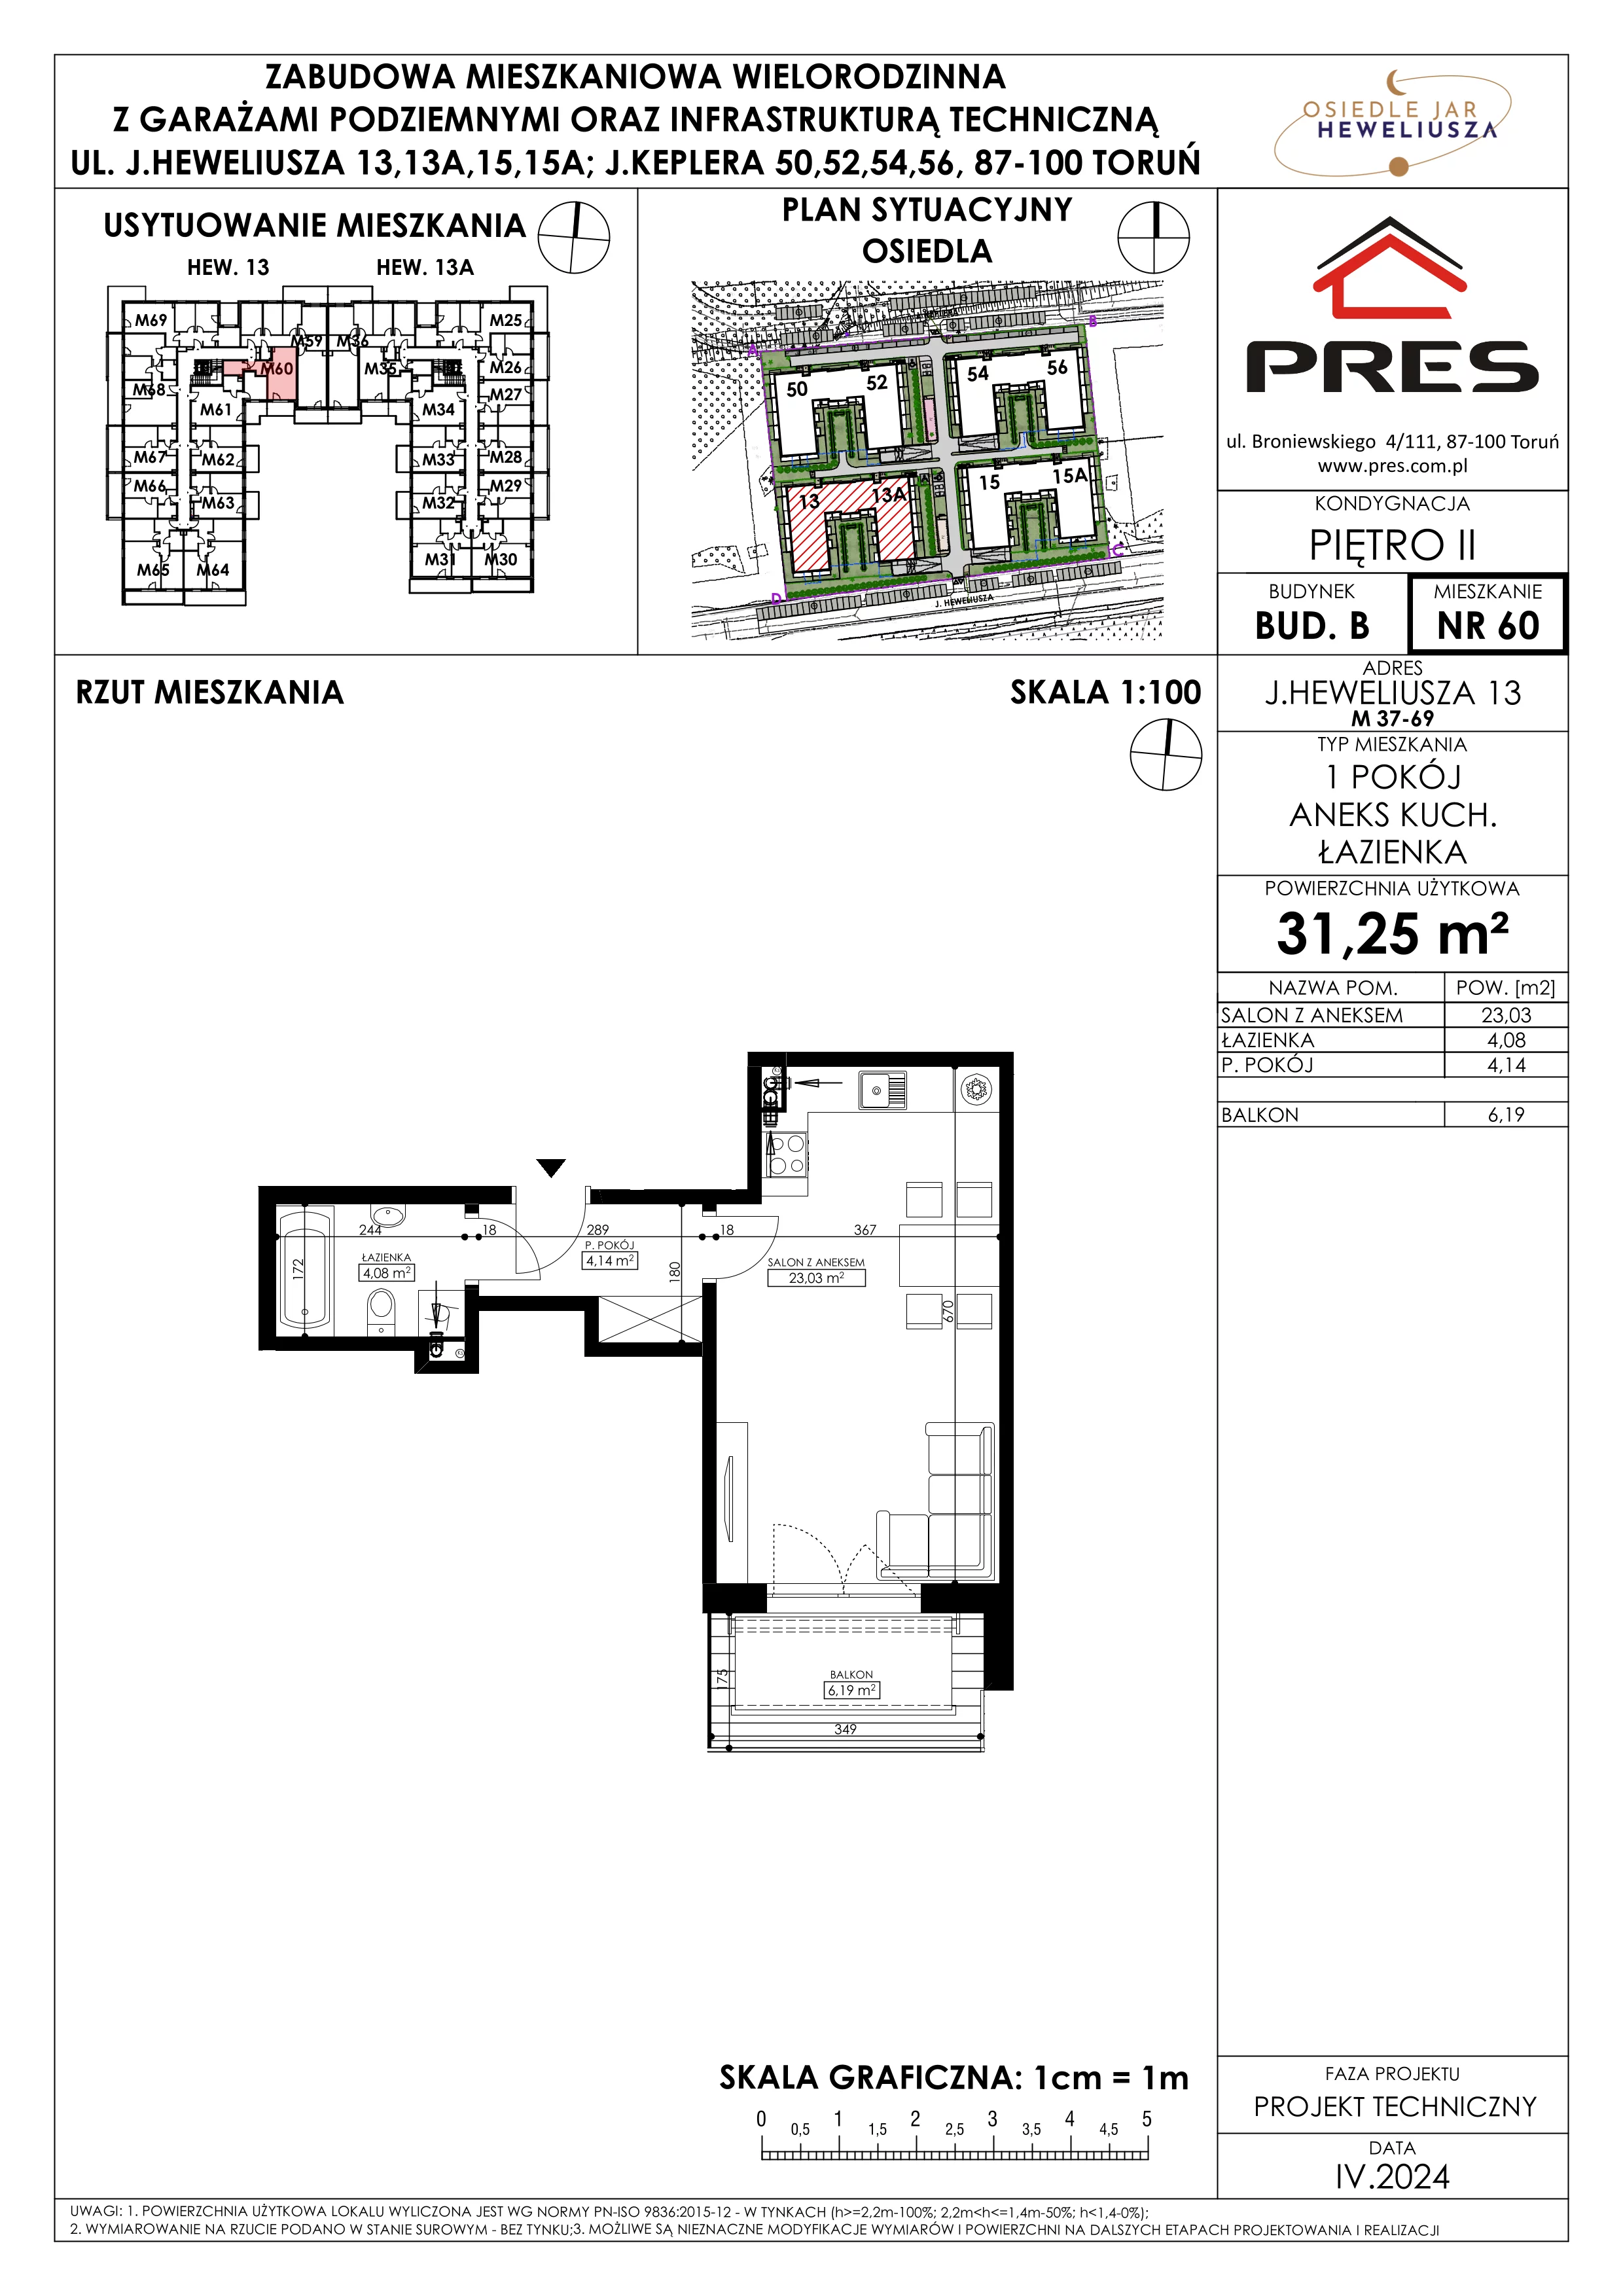 Mieszkanie 31,25 m², piętro 2, oferta nr 60, Osiedle JAR Heweliusza - Etap II, Toruń, Wrzosy, JAR, ul. Heweliusza 13-15A